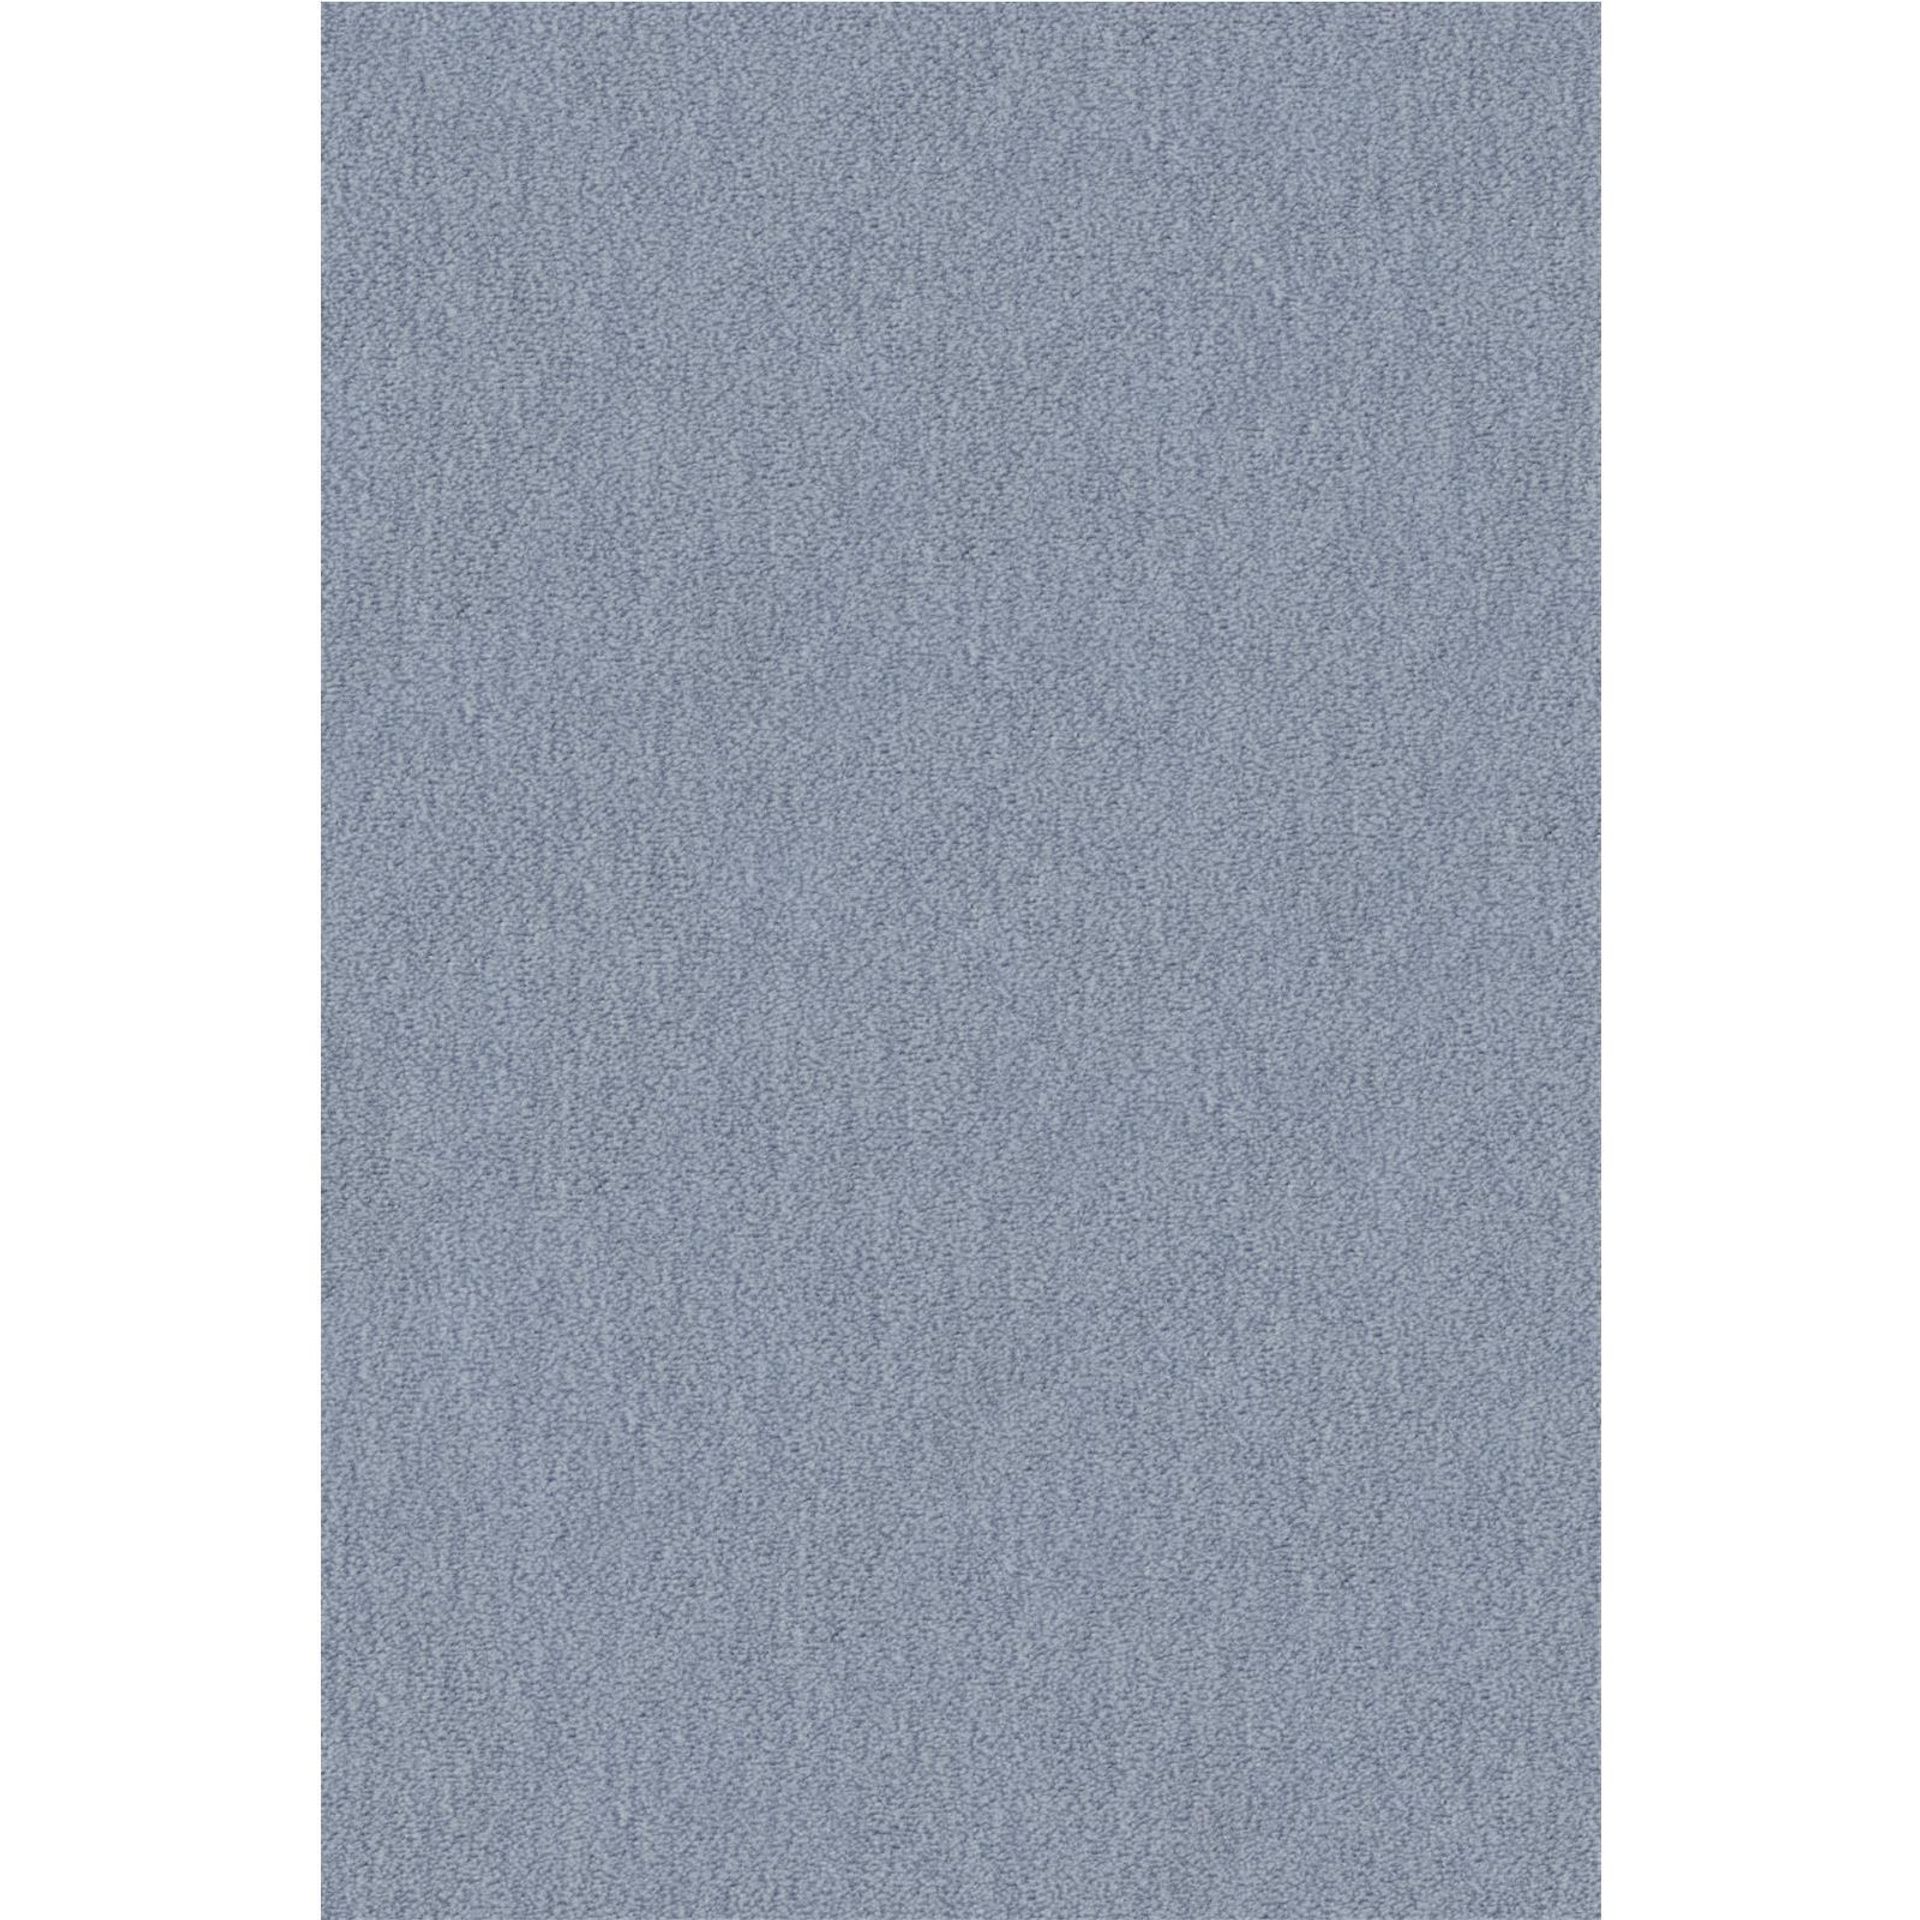 Teppichboden Vorwerk Passion 1002 NUTRIA MELANGE Velours Blau 3R14 - Rollenbreite 400 cm